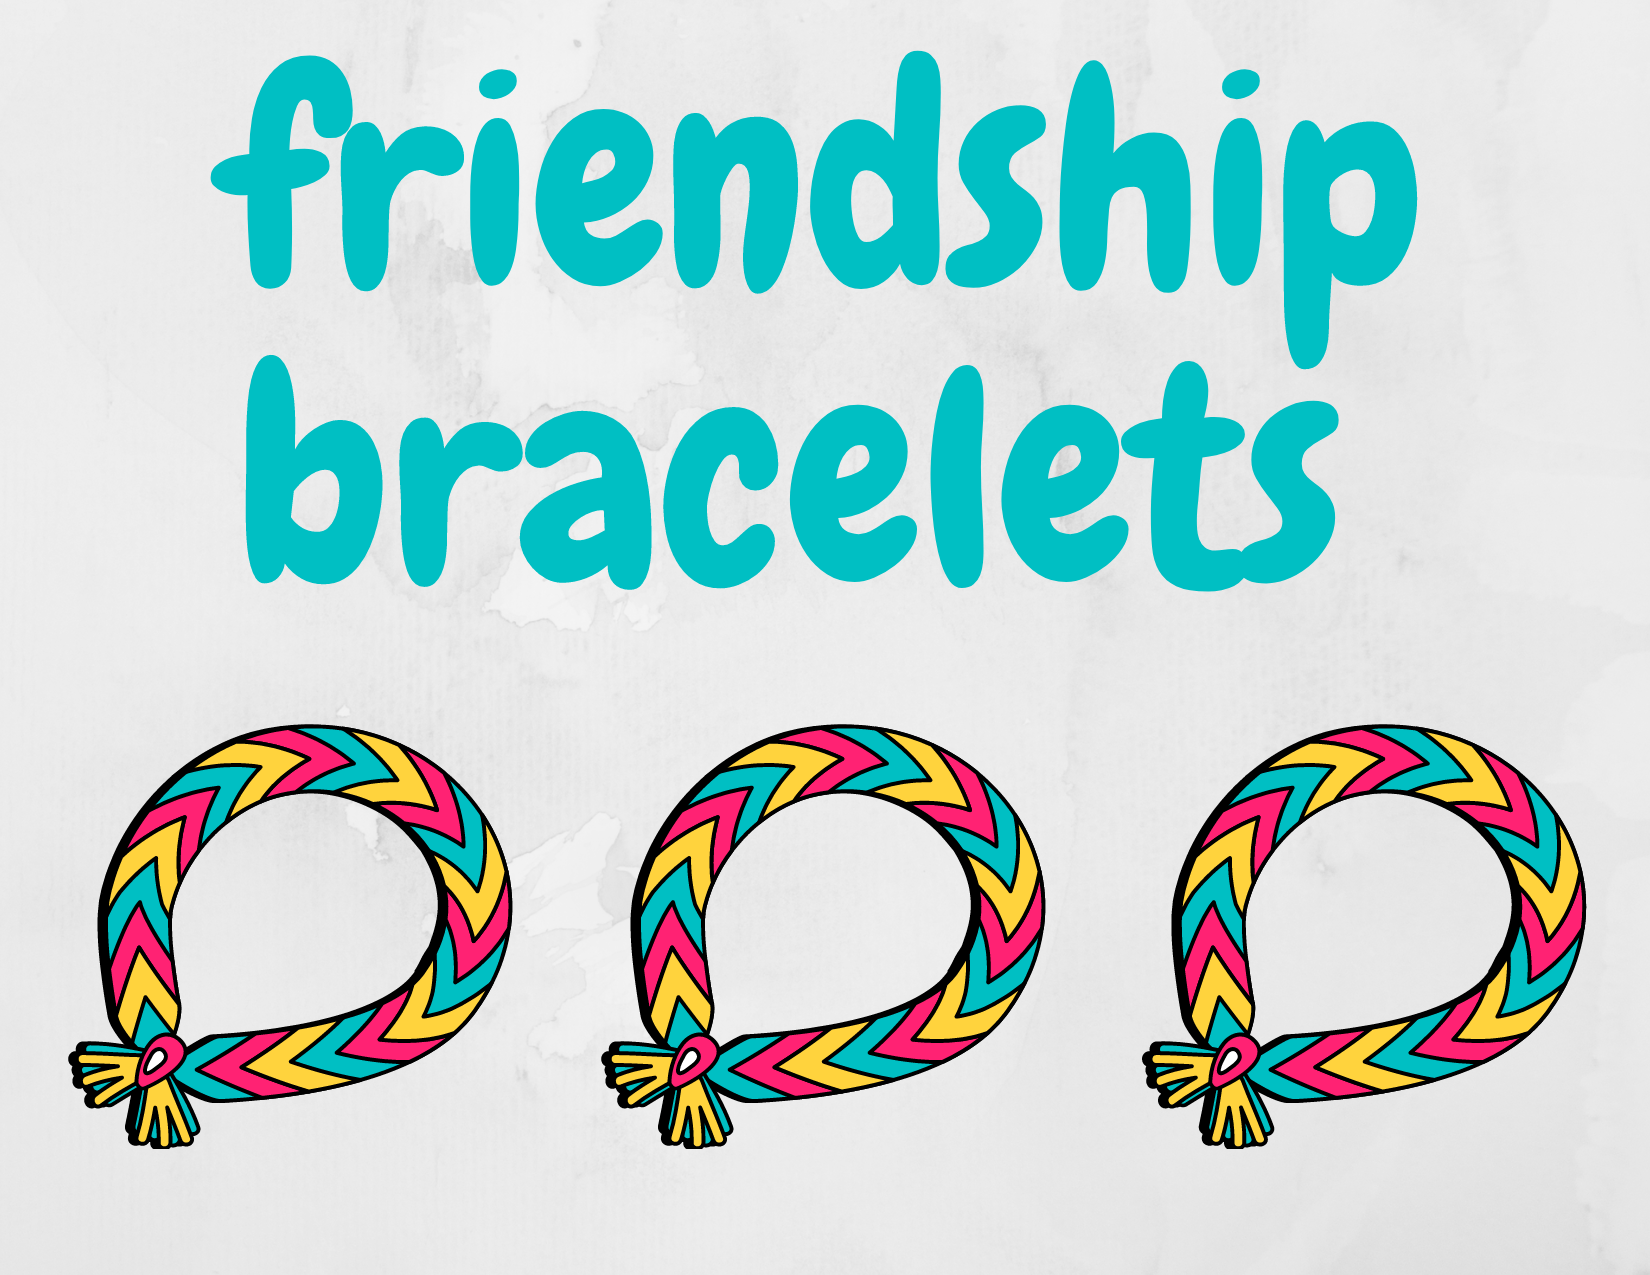 FRIENDSHIP/PARACORD BRACELETS